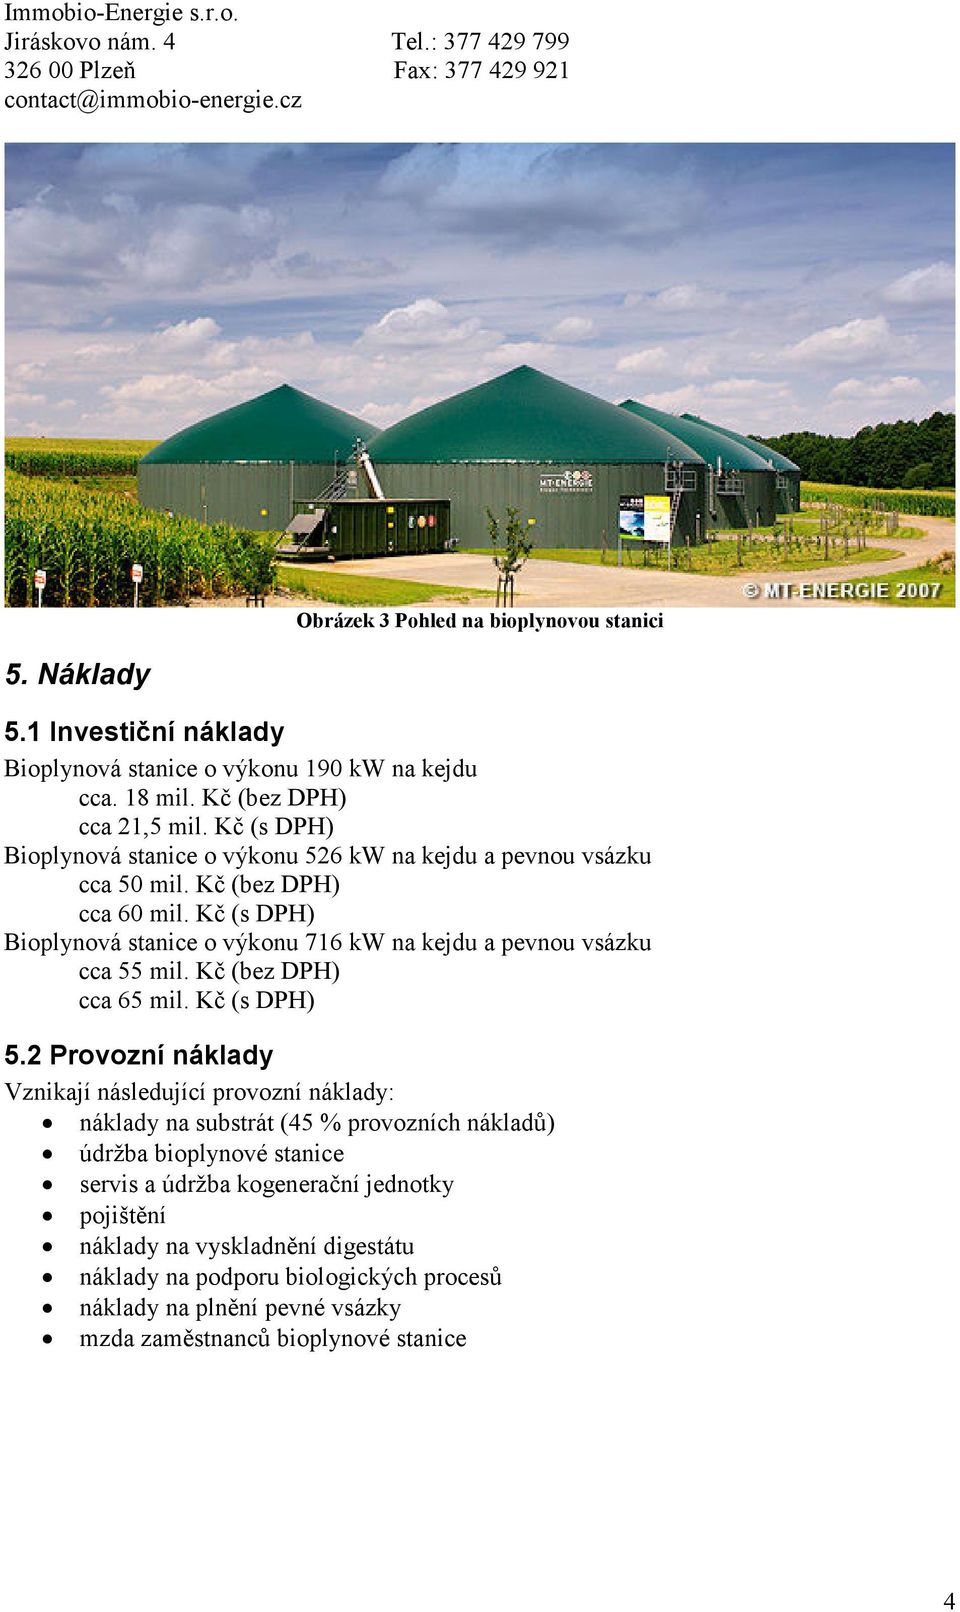 Kč (s DPH) Bioplynová stanice o výkonu 716 kw na kejdu a pevnou vsázku cca 55 mil. Kč (bez DPH) cca 65 mil. Kč (s DPH) 5.